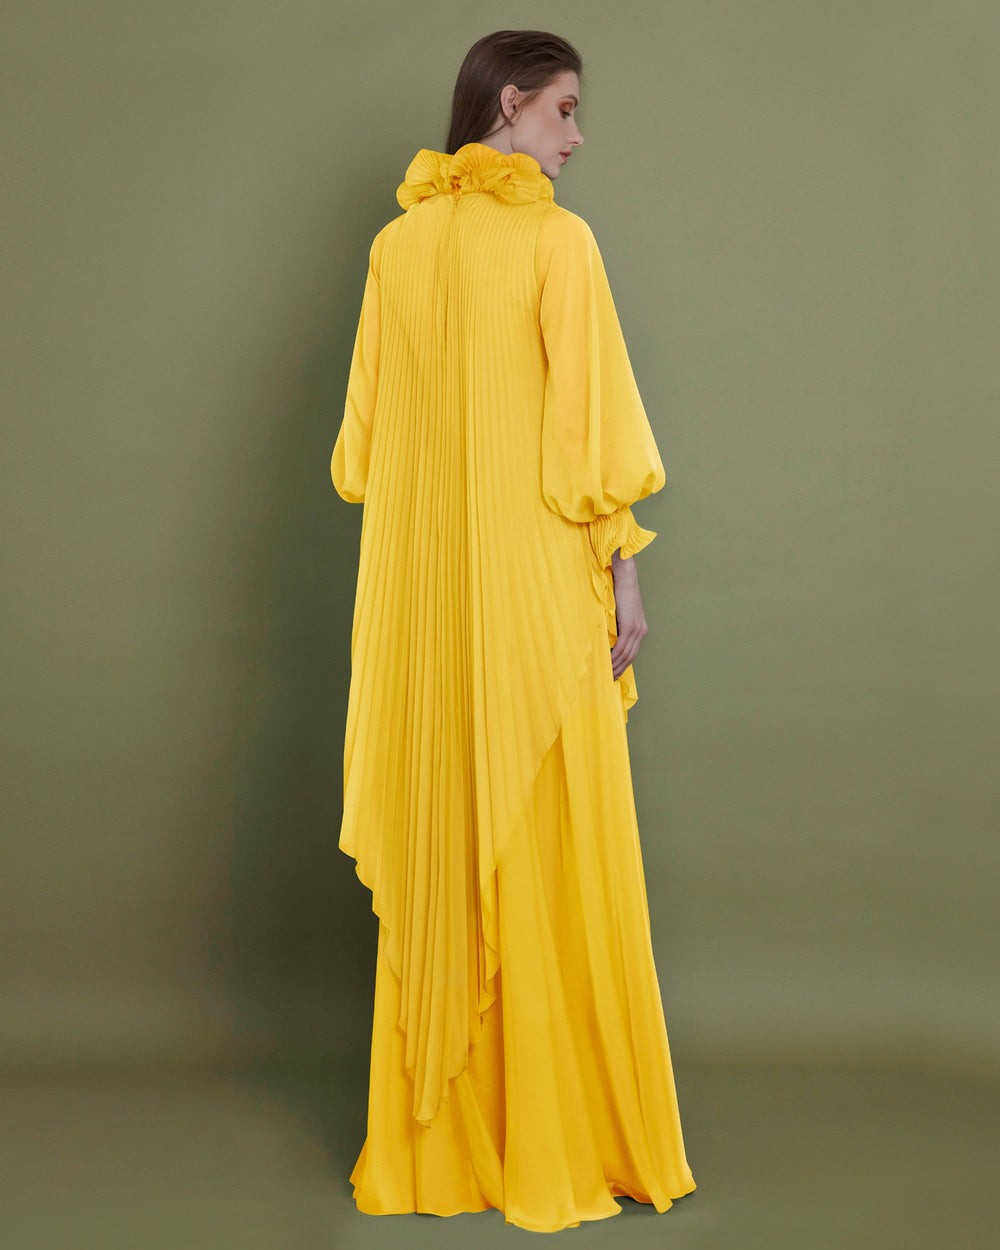 Loose Cut Yellow Dress - FOSTANI